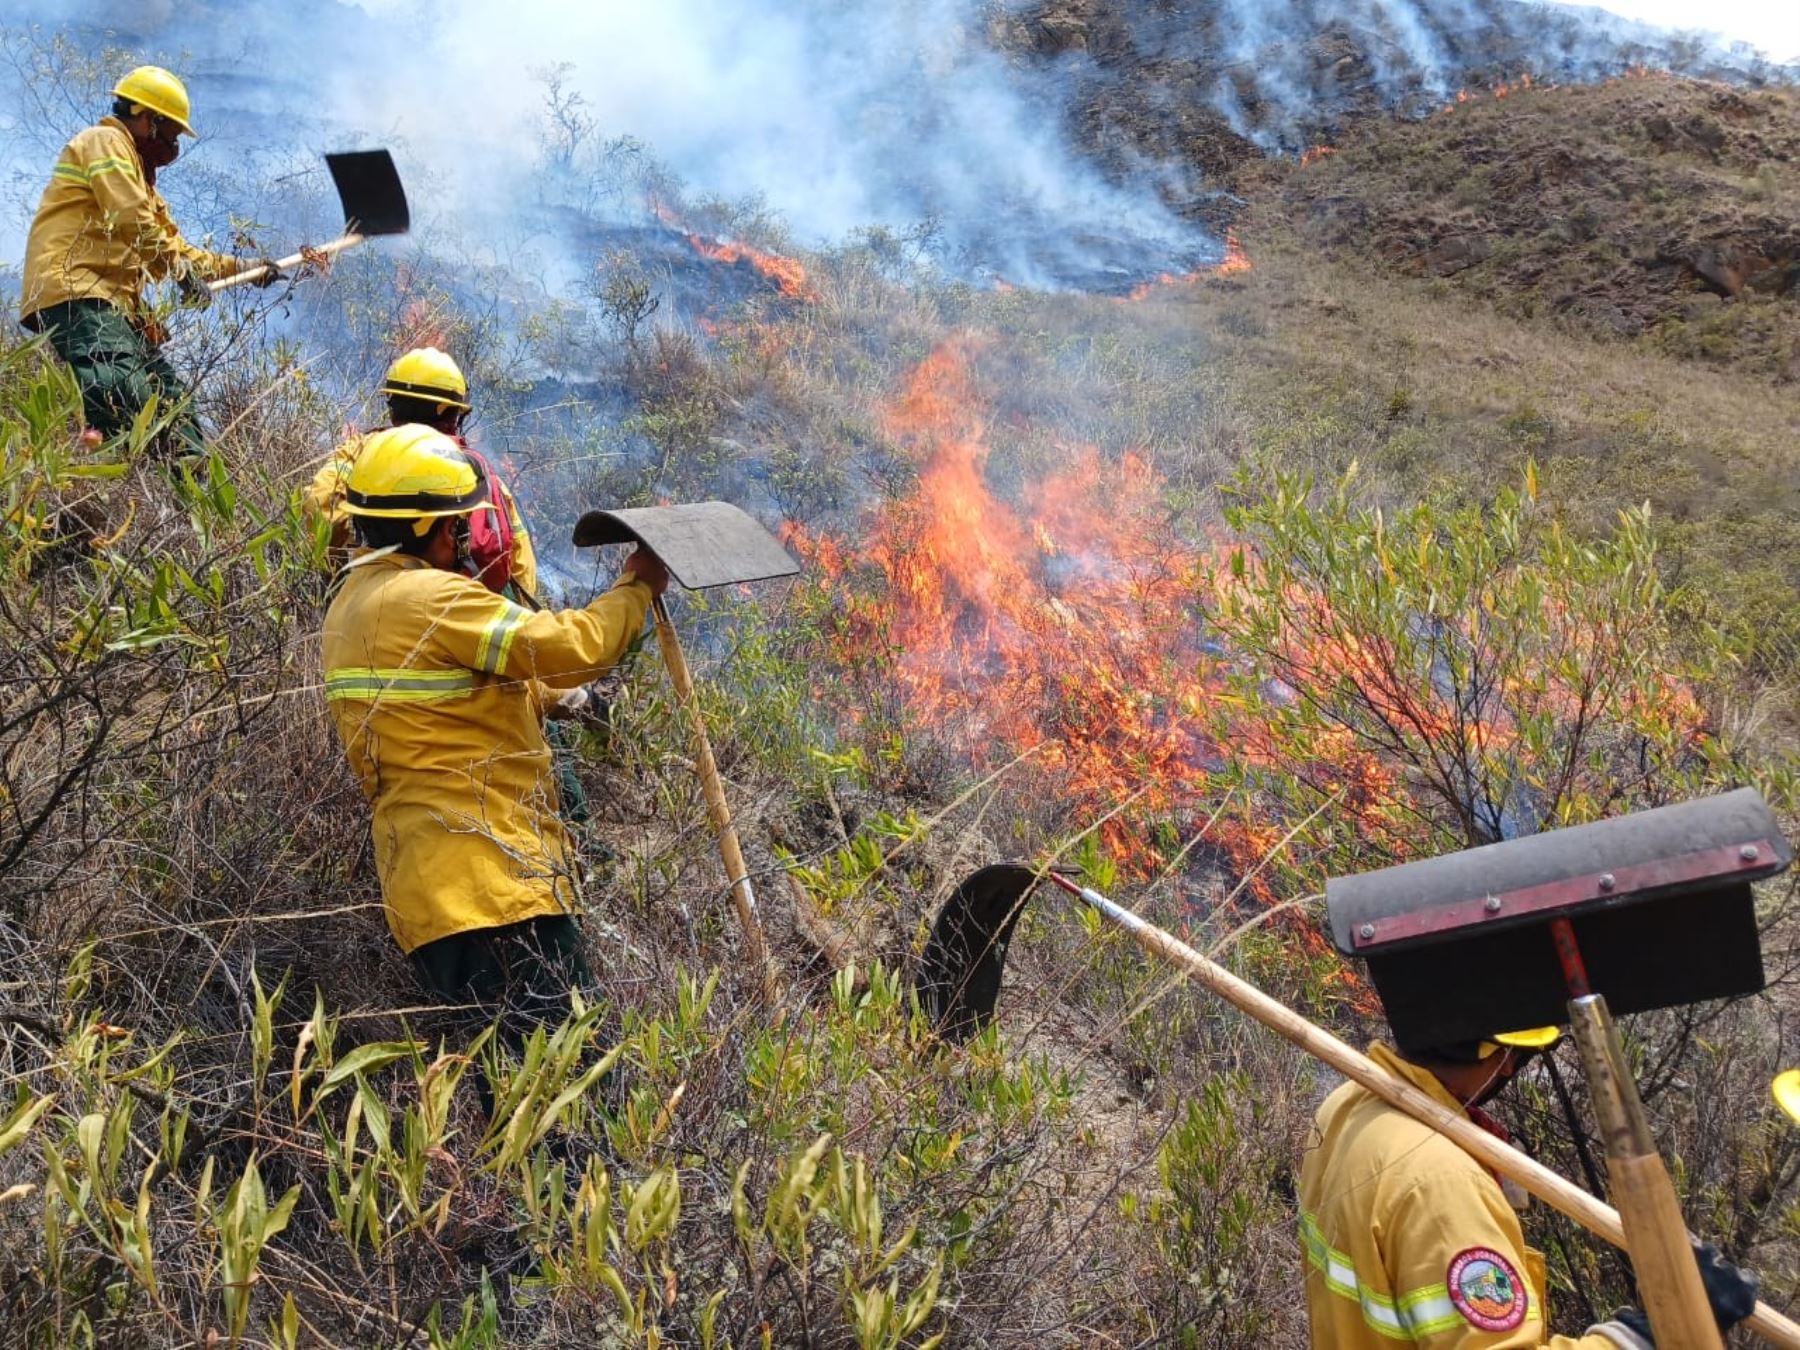 Bomberos forestales y brigadistas lograron controlar el incendio forestal que afectaba la ruta 1 del Camino Inca a Machu Picchu. Foto: ANDINA/difusión.